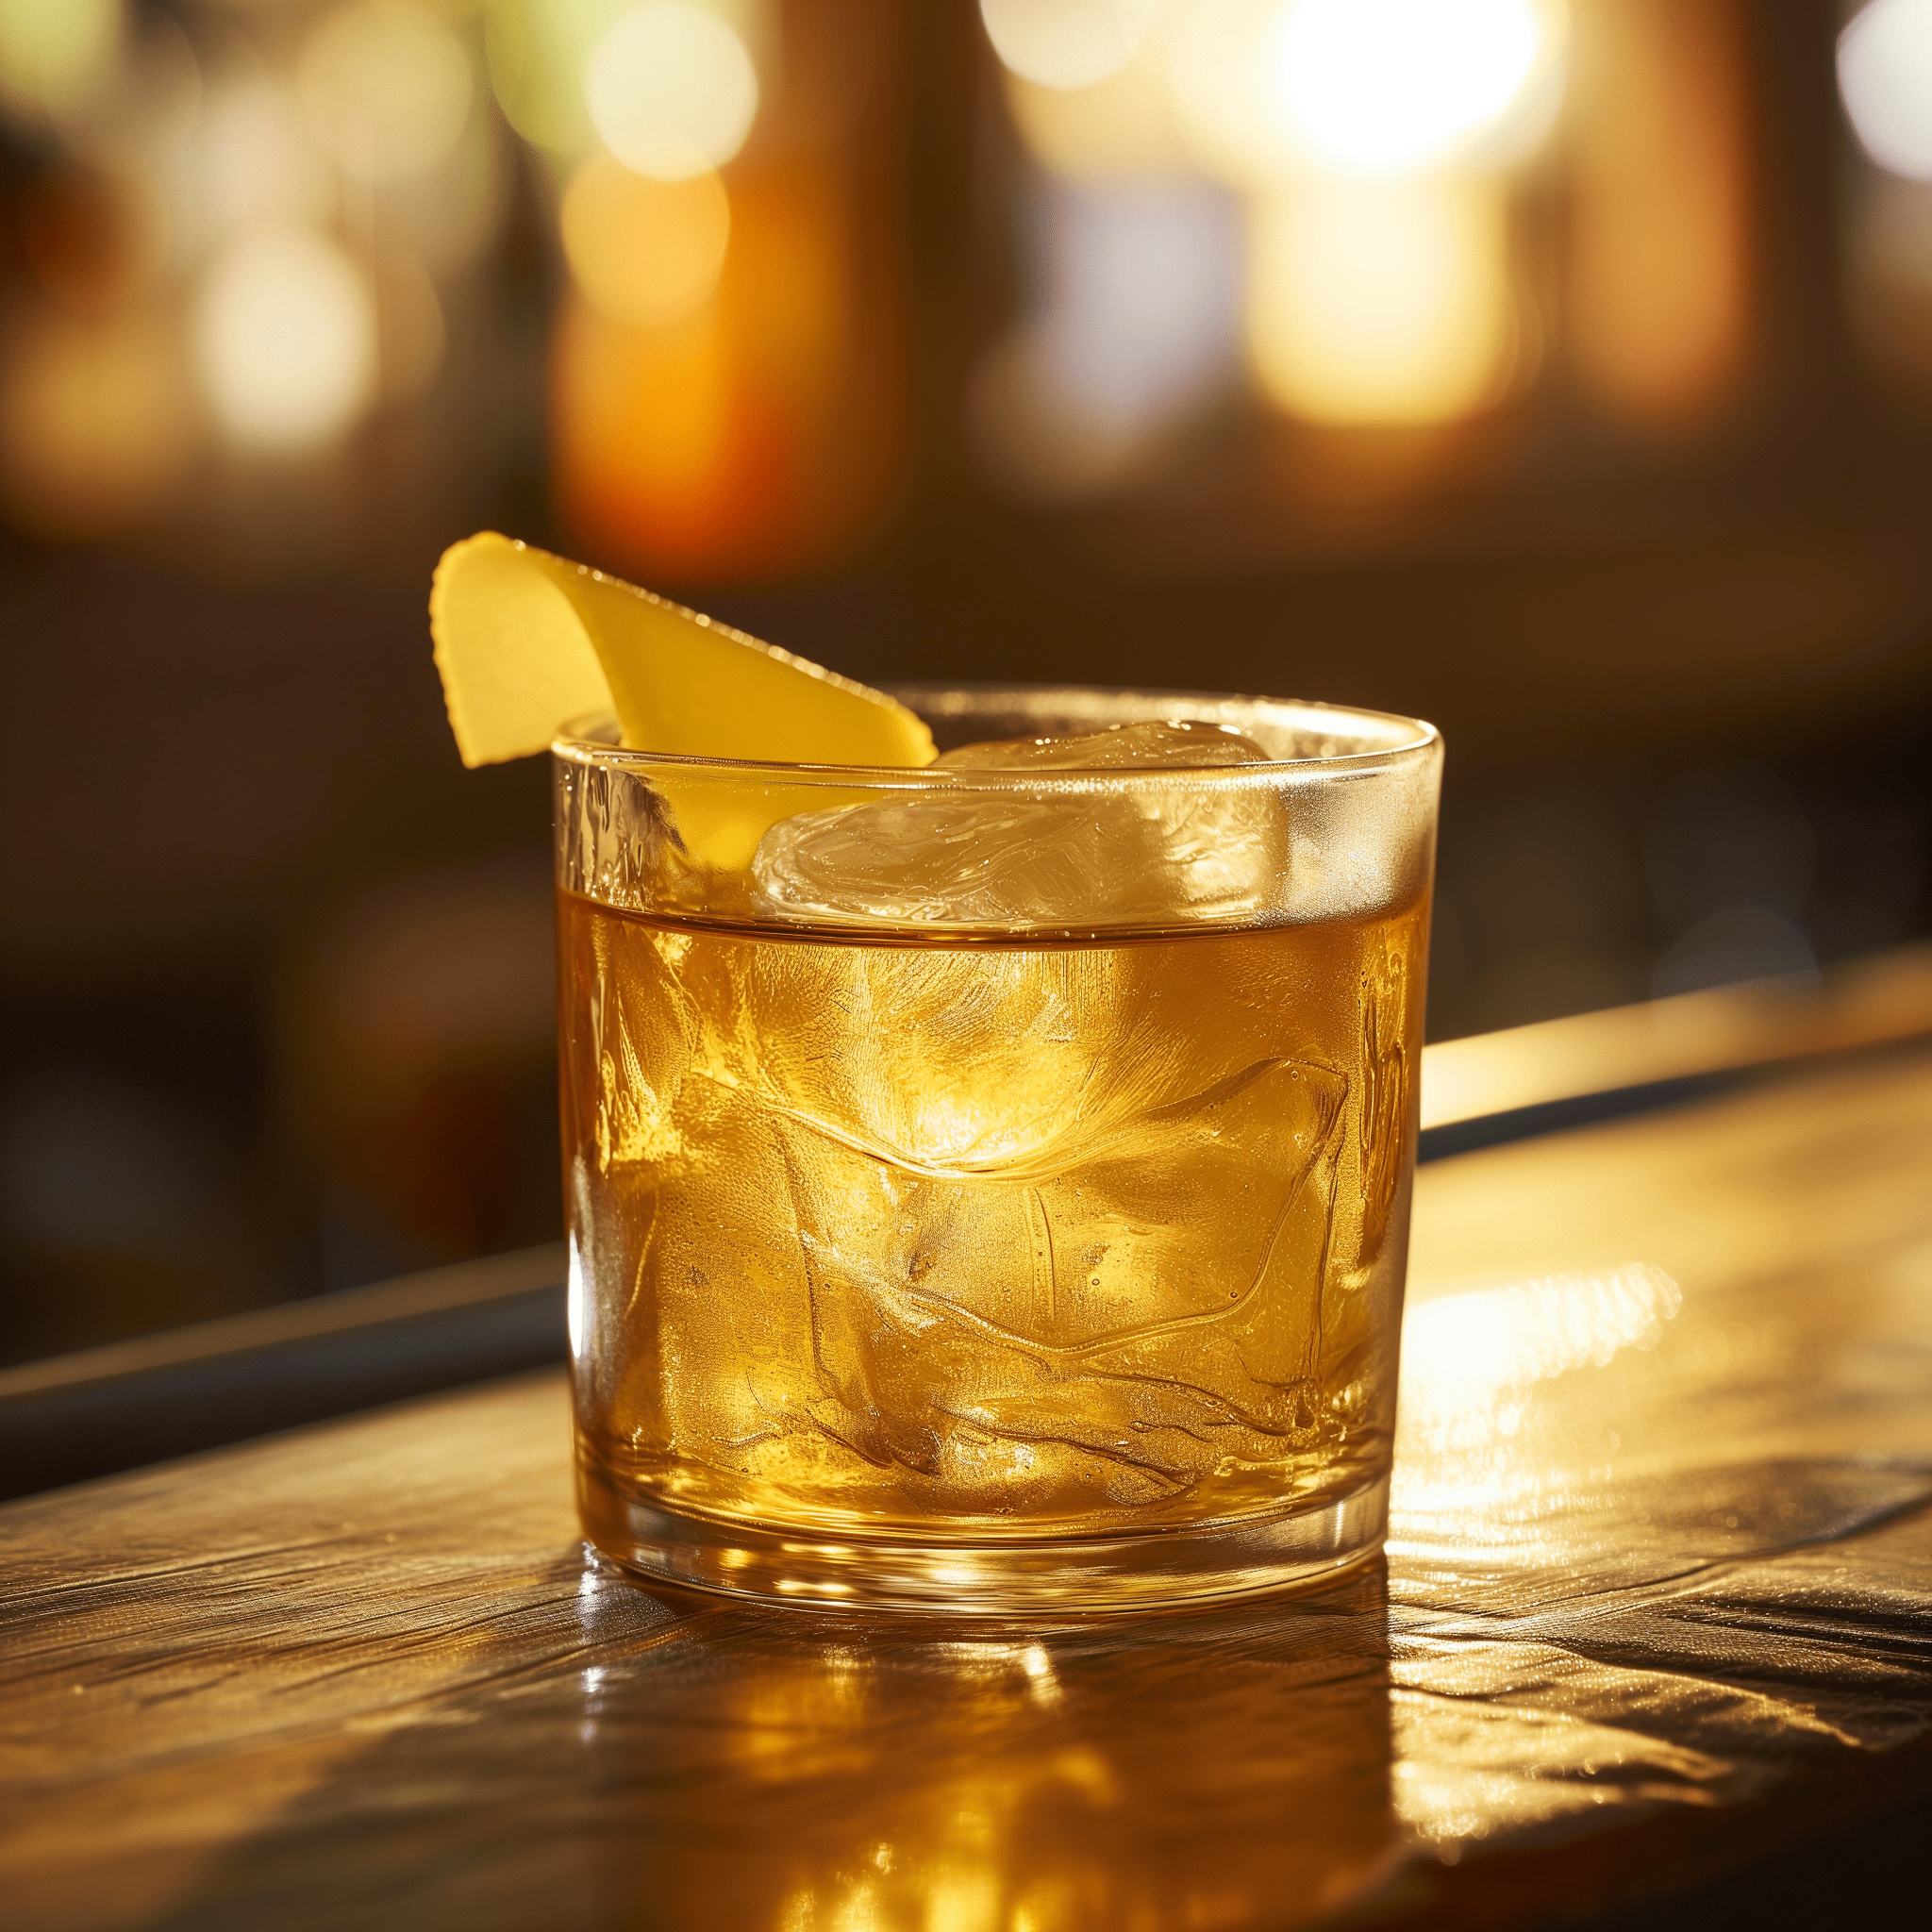 El Torado Cóctel Receta - El Torado ofrece una mezcla armoniosa de sabores. Es un cóctel robusto con un toque cítrico de limón complementado por los matices terrosos del tequila y la dulzura natural de la miel. El resultado es una bebida bien equilibrada que es a la vez estimulante y calmante.